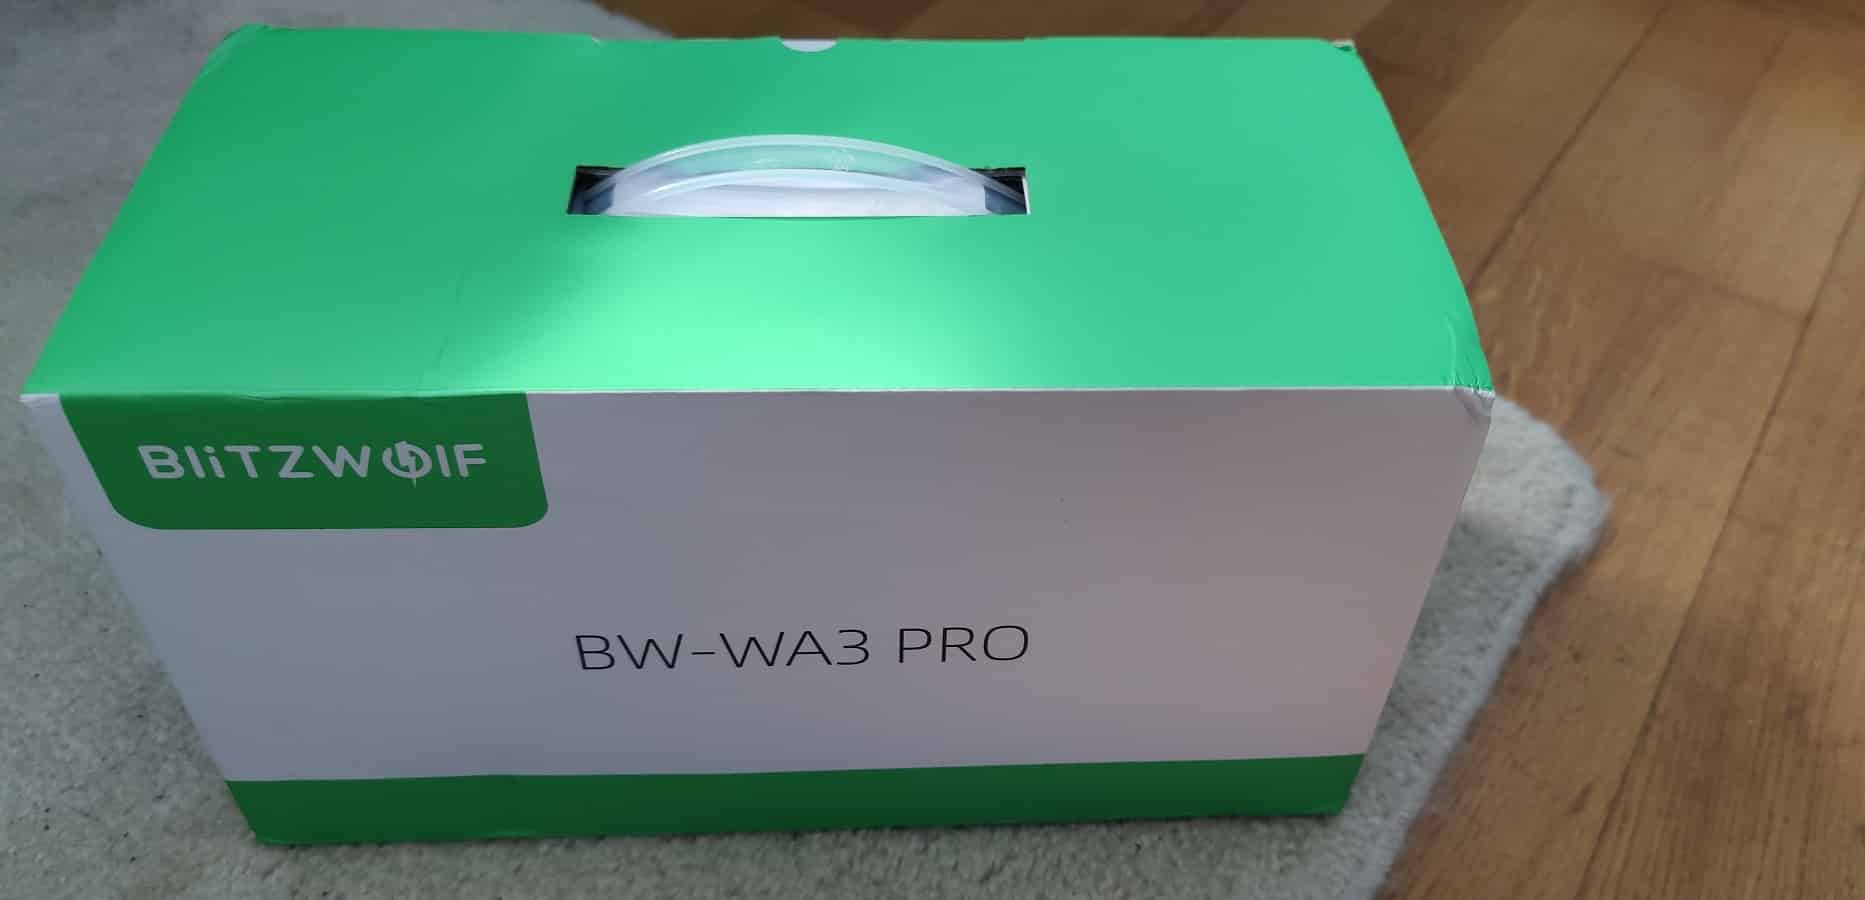 BlitzWolf BW-WA3 Pro packaging